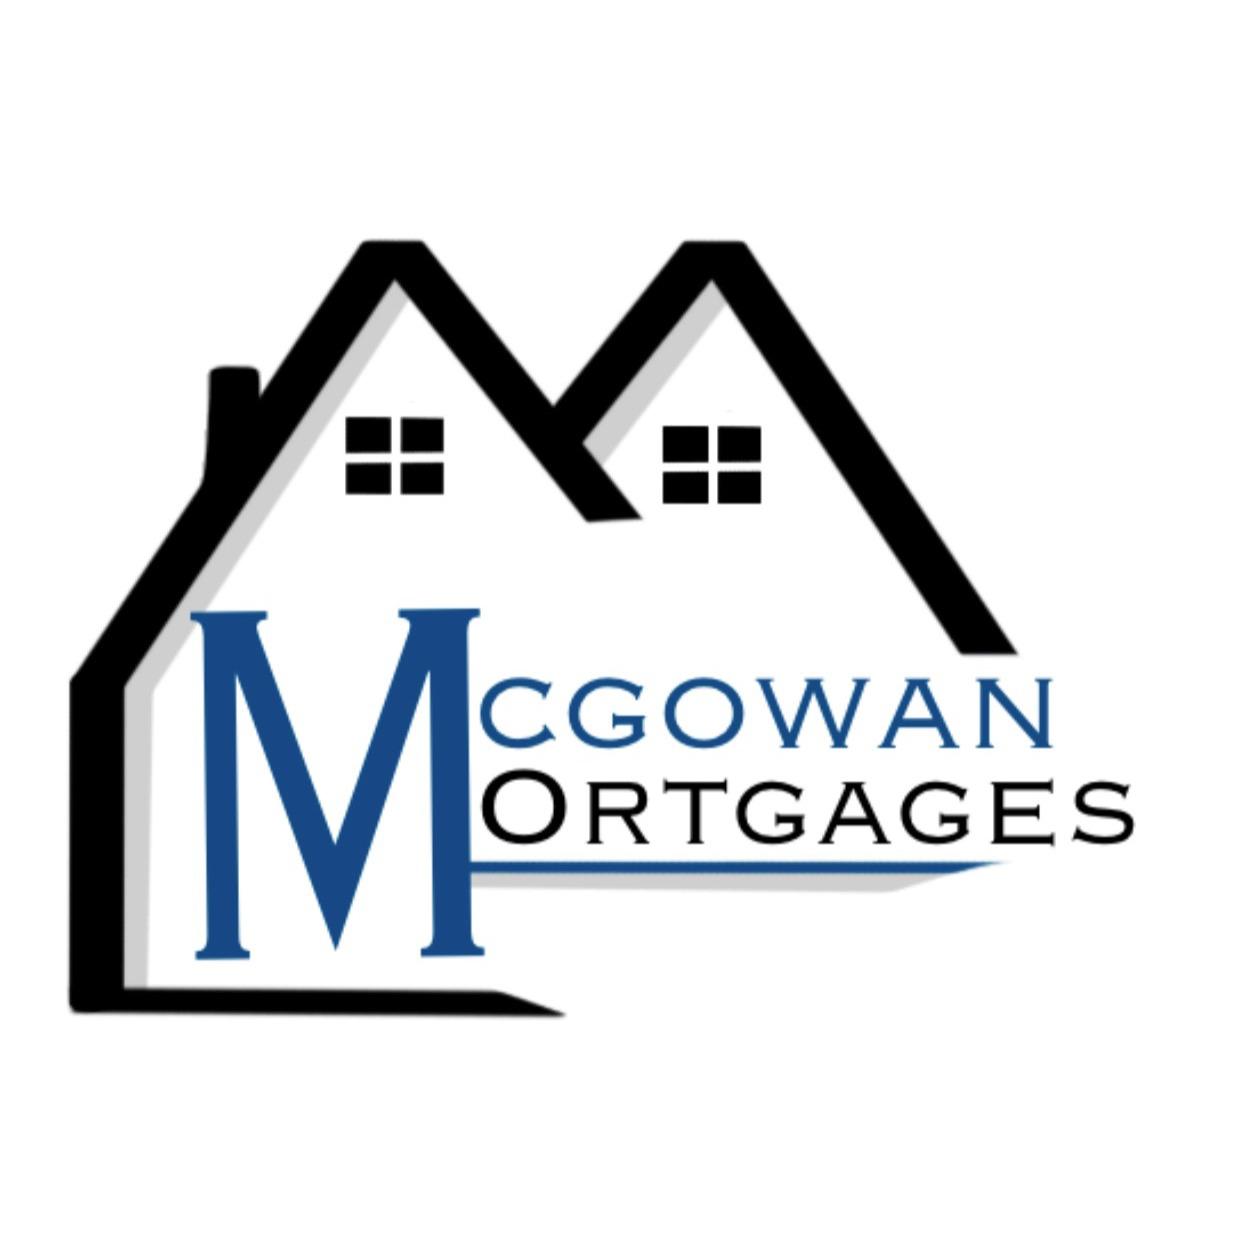 McGowan Mortgages - Kansas City, MO 64131 - (816)631-9687 | ShowMeLocal.com